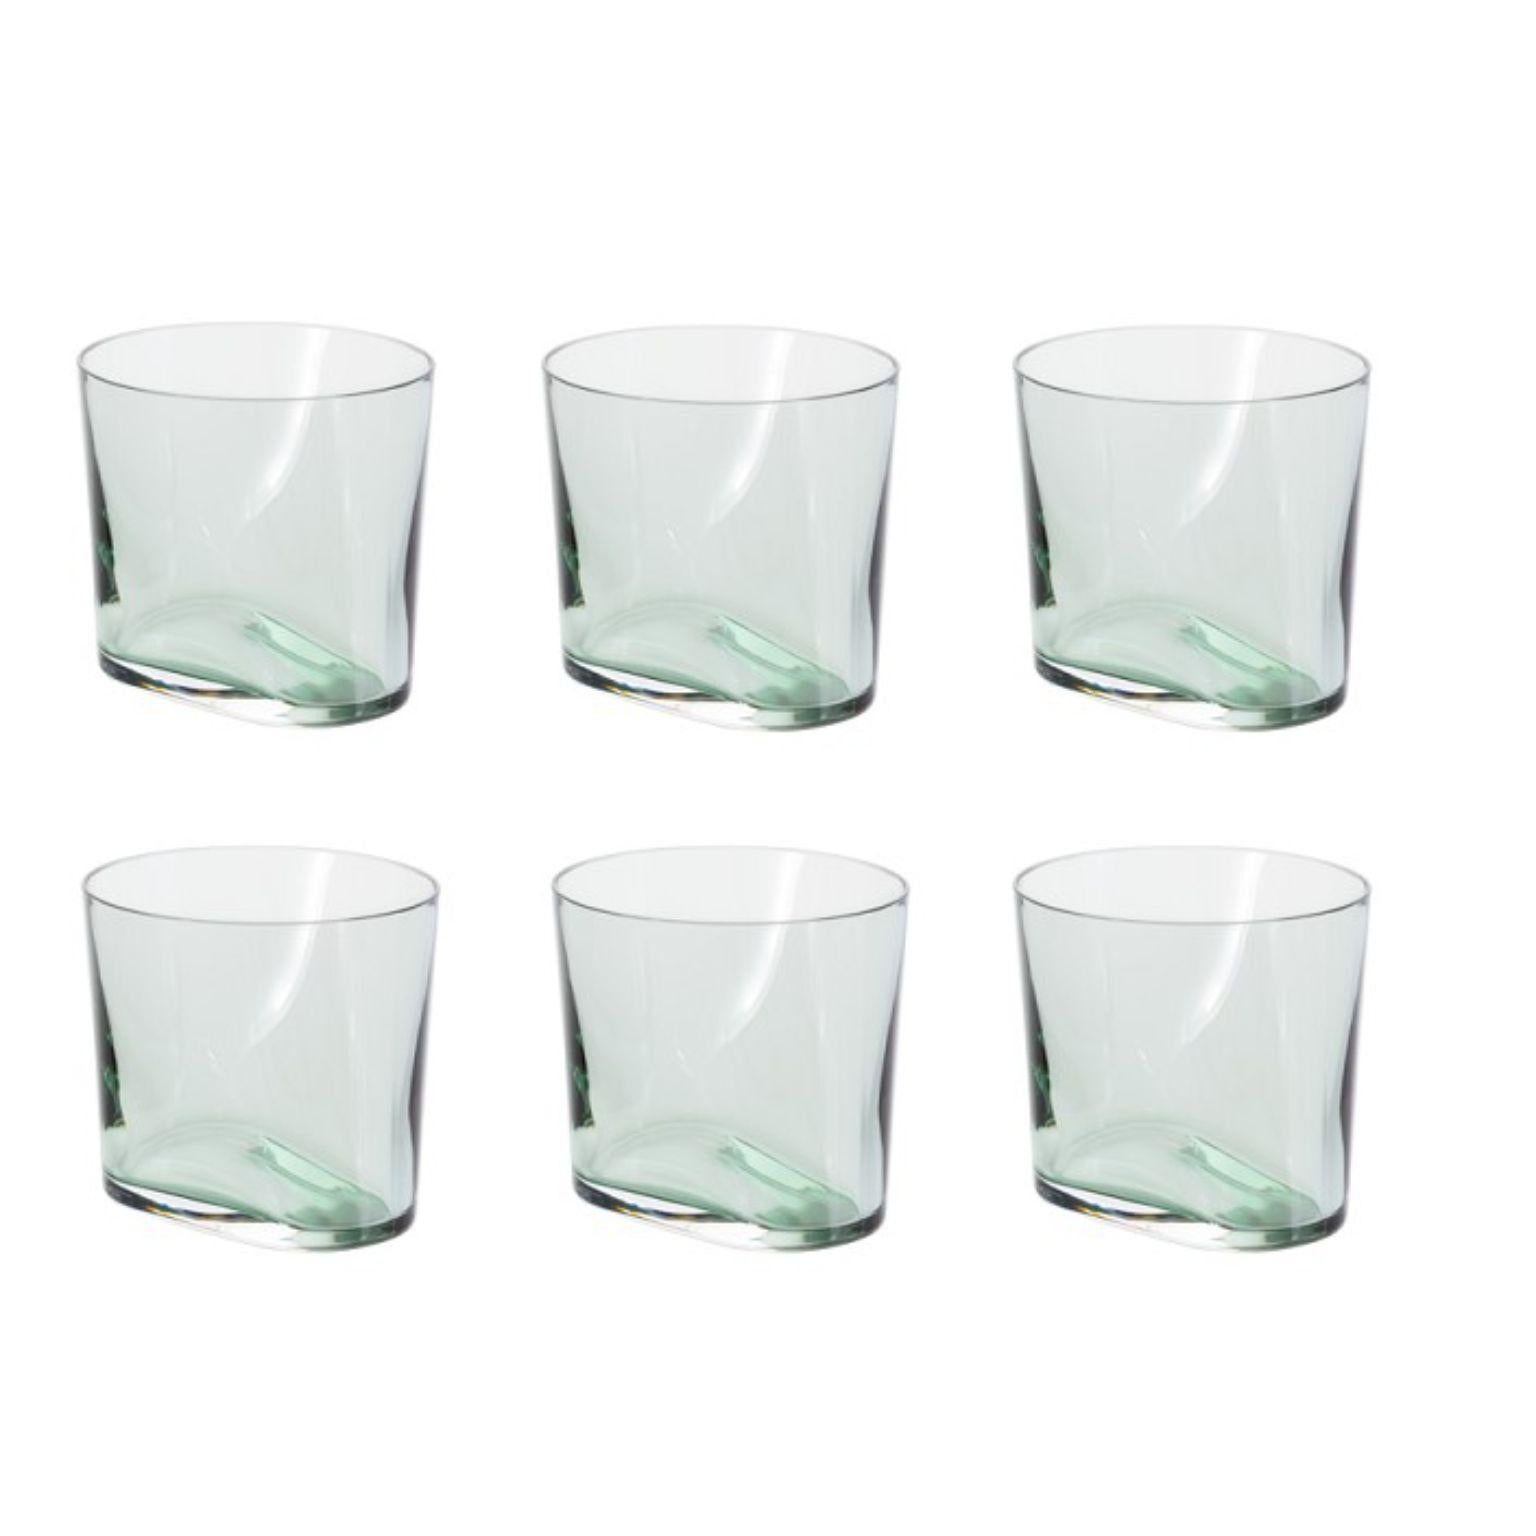 Lot de 6 verres vert fumée de Pulpo
Dimensions : D 8,5 x H 8,5 cm
Matériaux : verre fait main

Choisissez-les, versez-les, roulez-les et tenez-les ; un kaléidoscope de couleurs, de formes et de textures vous attend. Les collections de pot-pourri